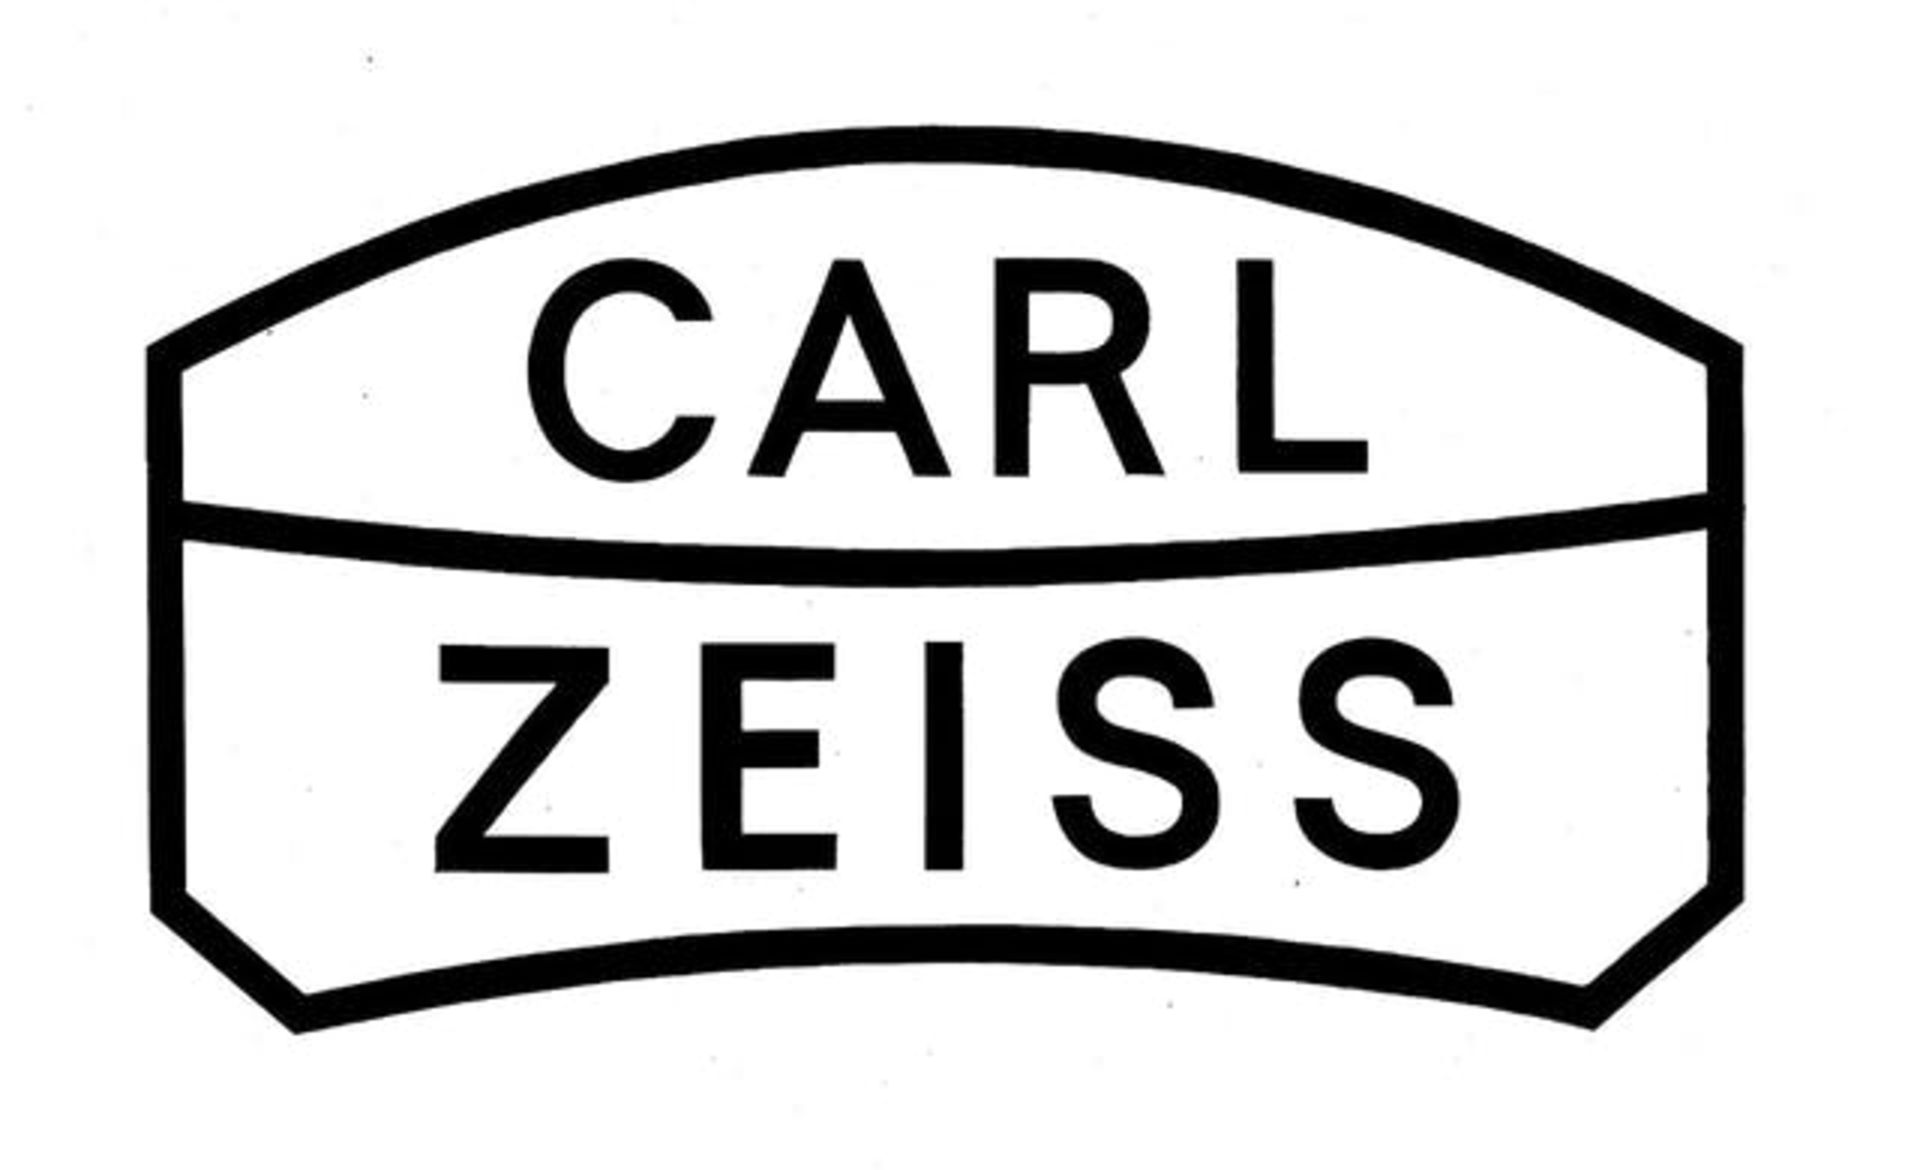 مرجع متخصصين ايران لوگوي كارل زايس / Carl Zeiss